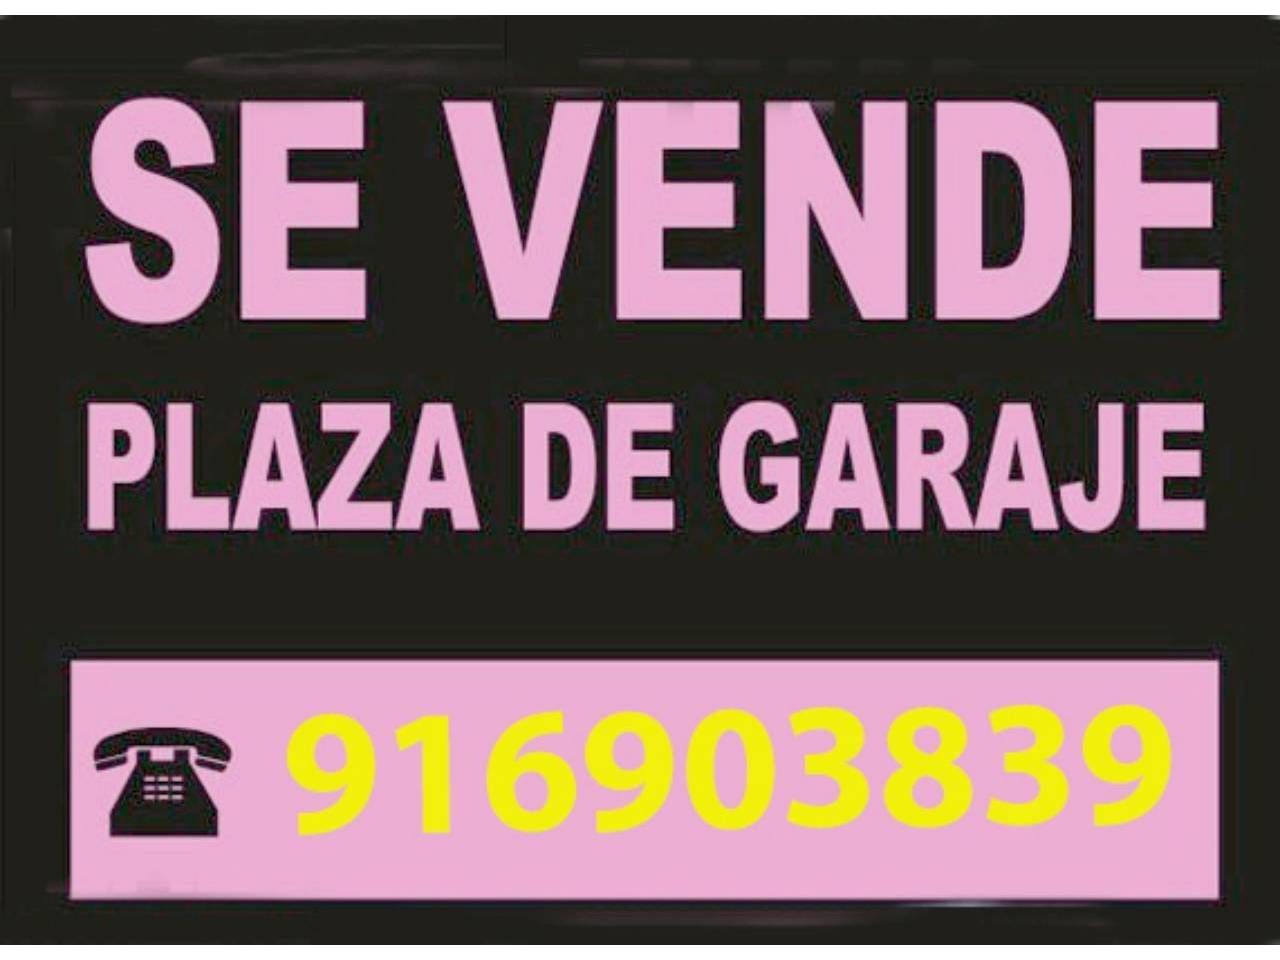 Vendo Plaza De Garaje Plazas de garaje en venta en El Arroyo - La Fuente, Fuenlabrada | fotocasa